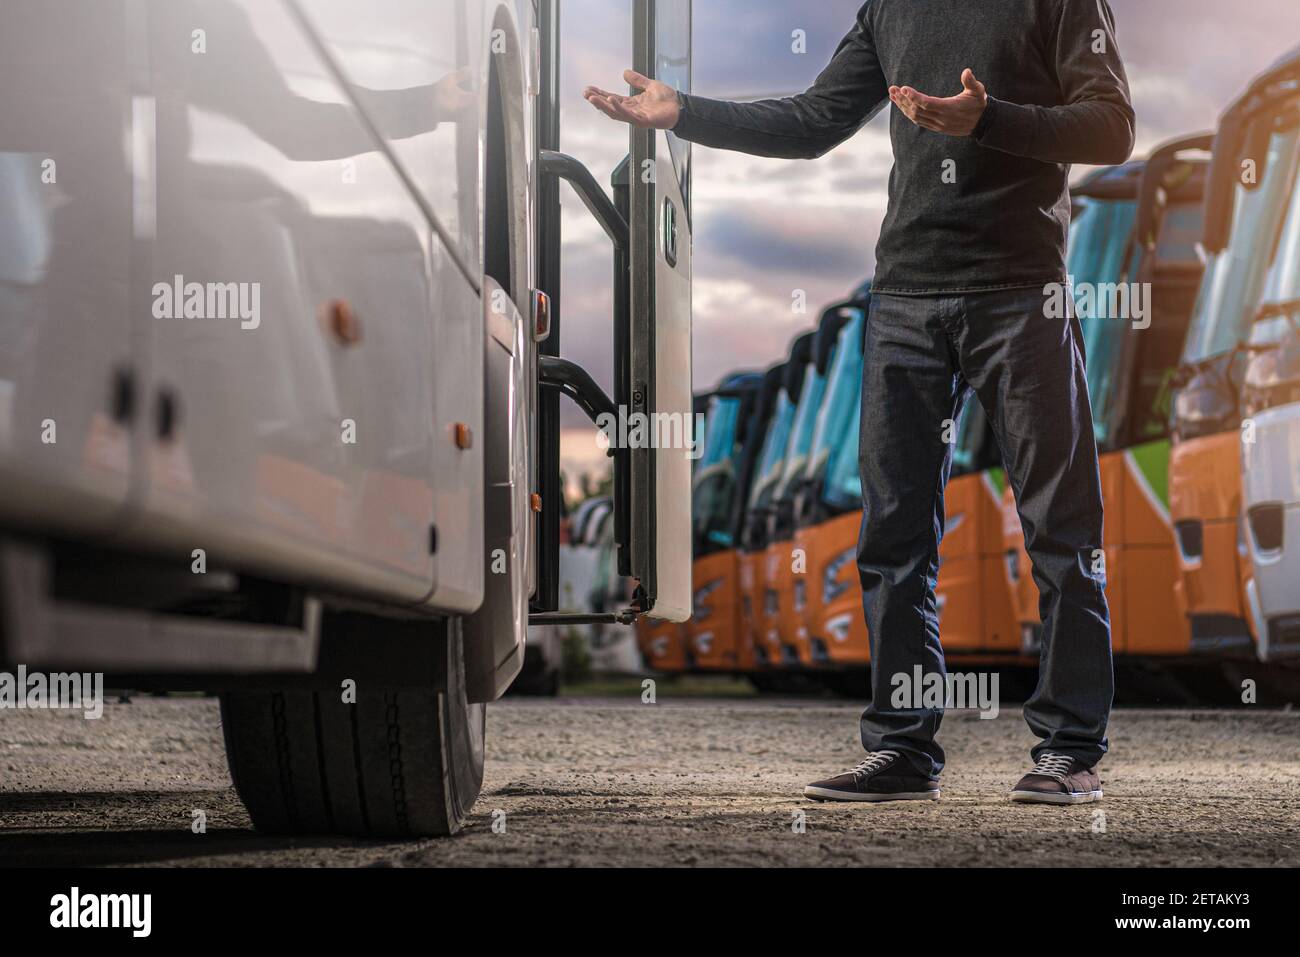 Kaukasischer Busfahrer in seiner 40s Begrüßung Passagiere während des Aufenthalts und Begrüßung neben Tour Bus Tür. Thema Automobil und Transport. Stockfoto